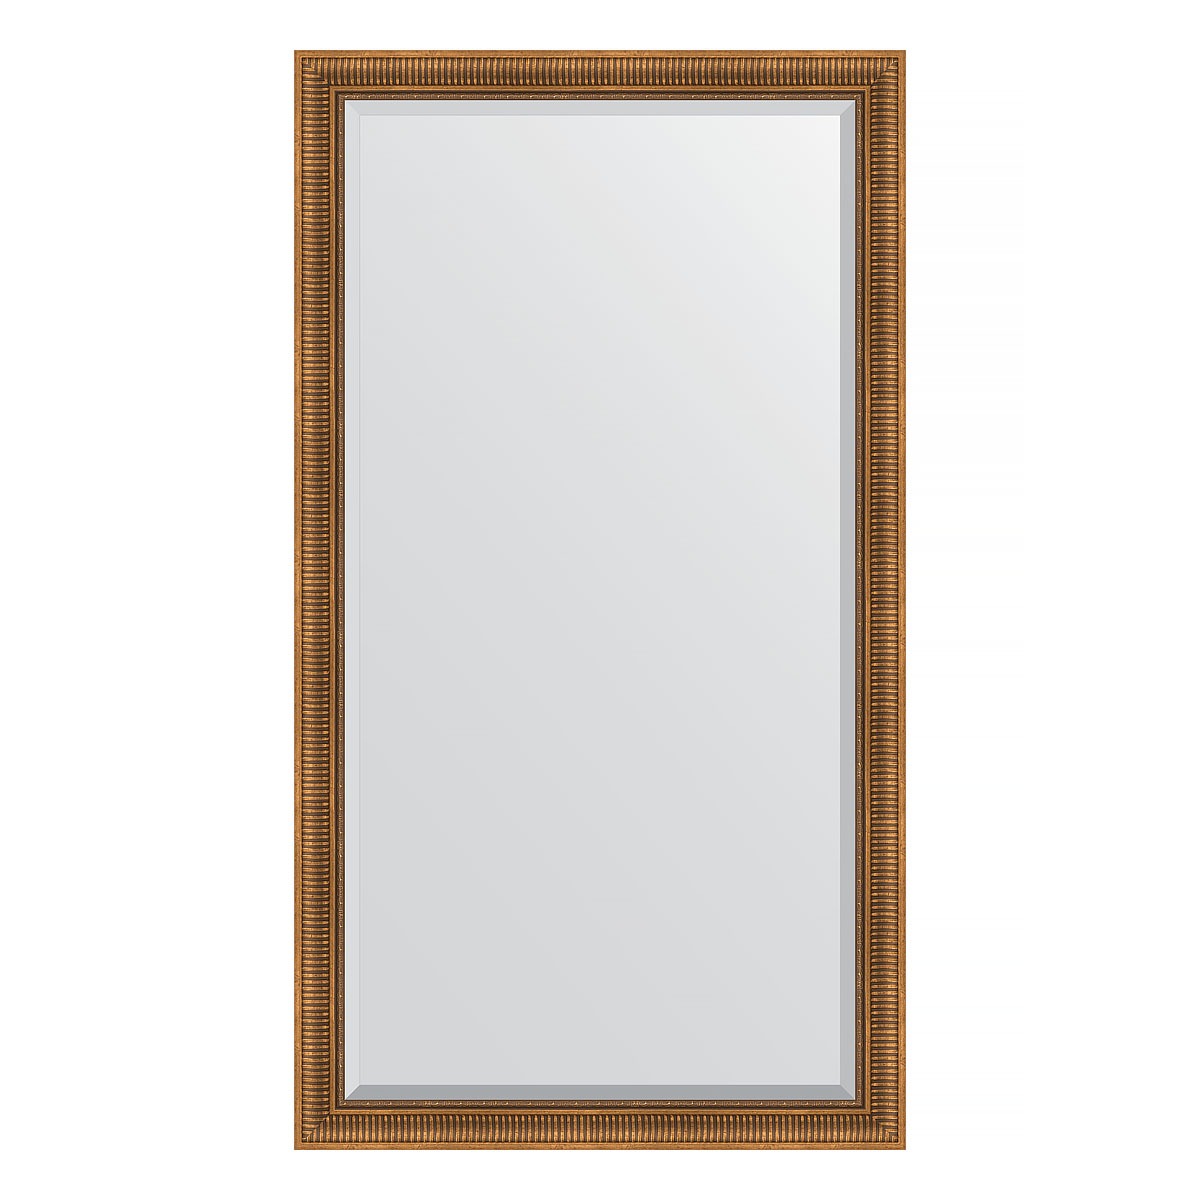 Зеркало напольное с фацетом в багетной раме Evoform бронзовый акведук 93 мм 112x202 см зеркало напольное с фацетом в багетной раме бронзовый акведук 93 мм 112x202 см